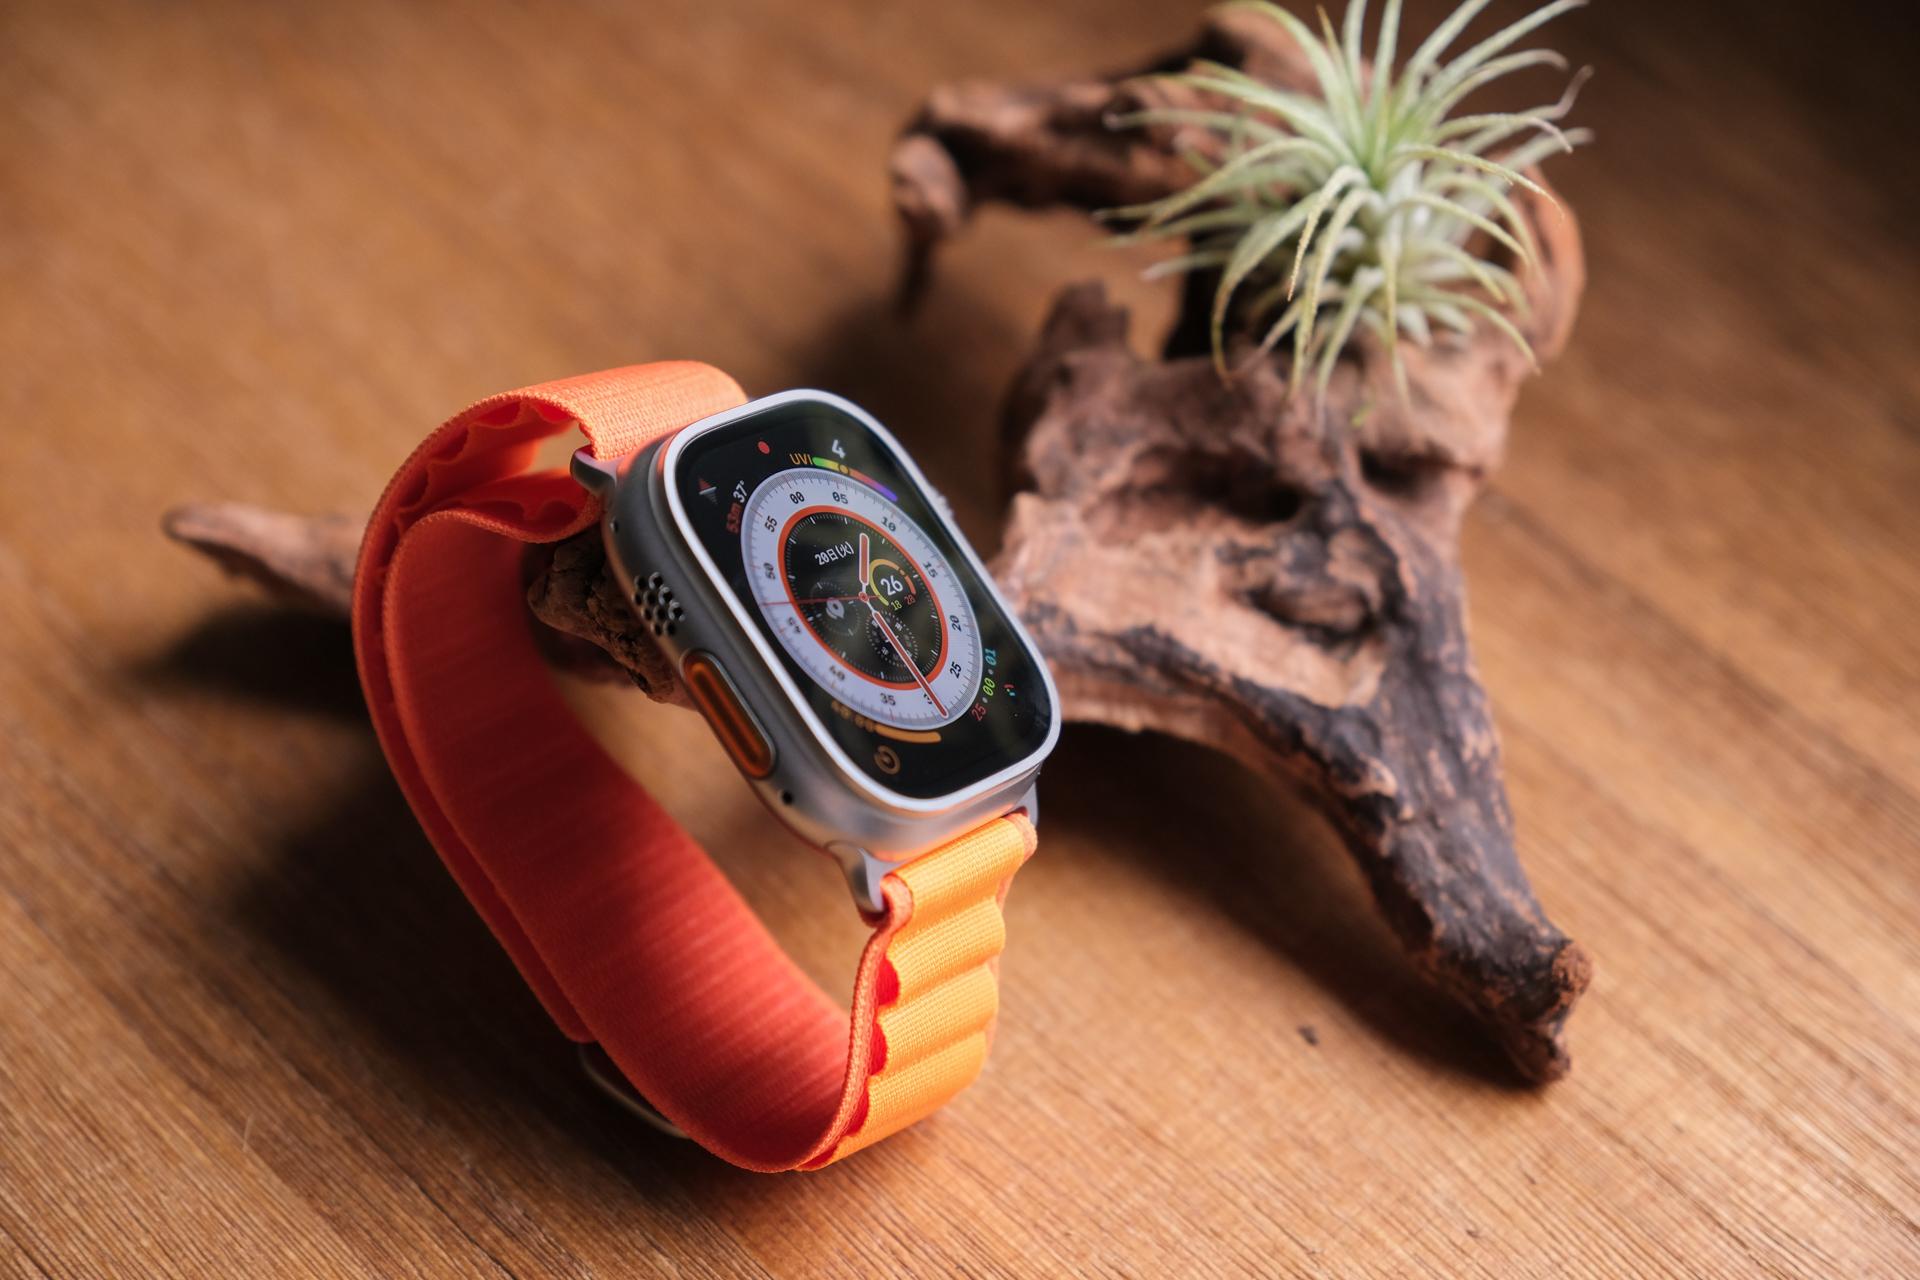 Apple Watch Ultraチタンケースとオレンジアルパインループ -L